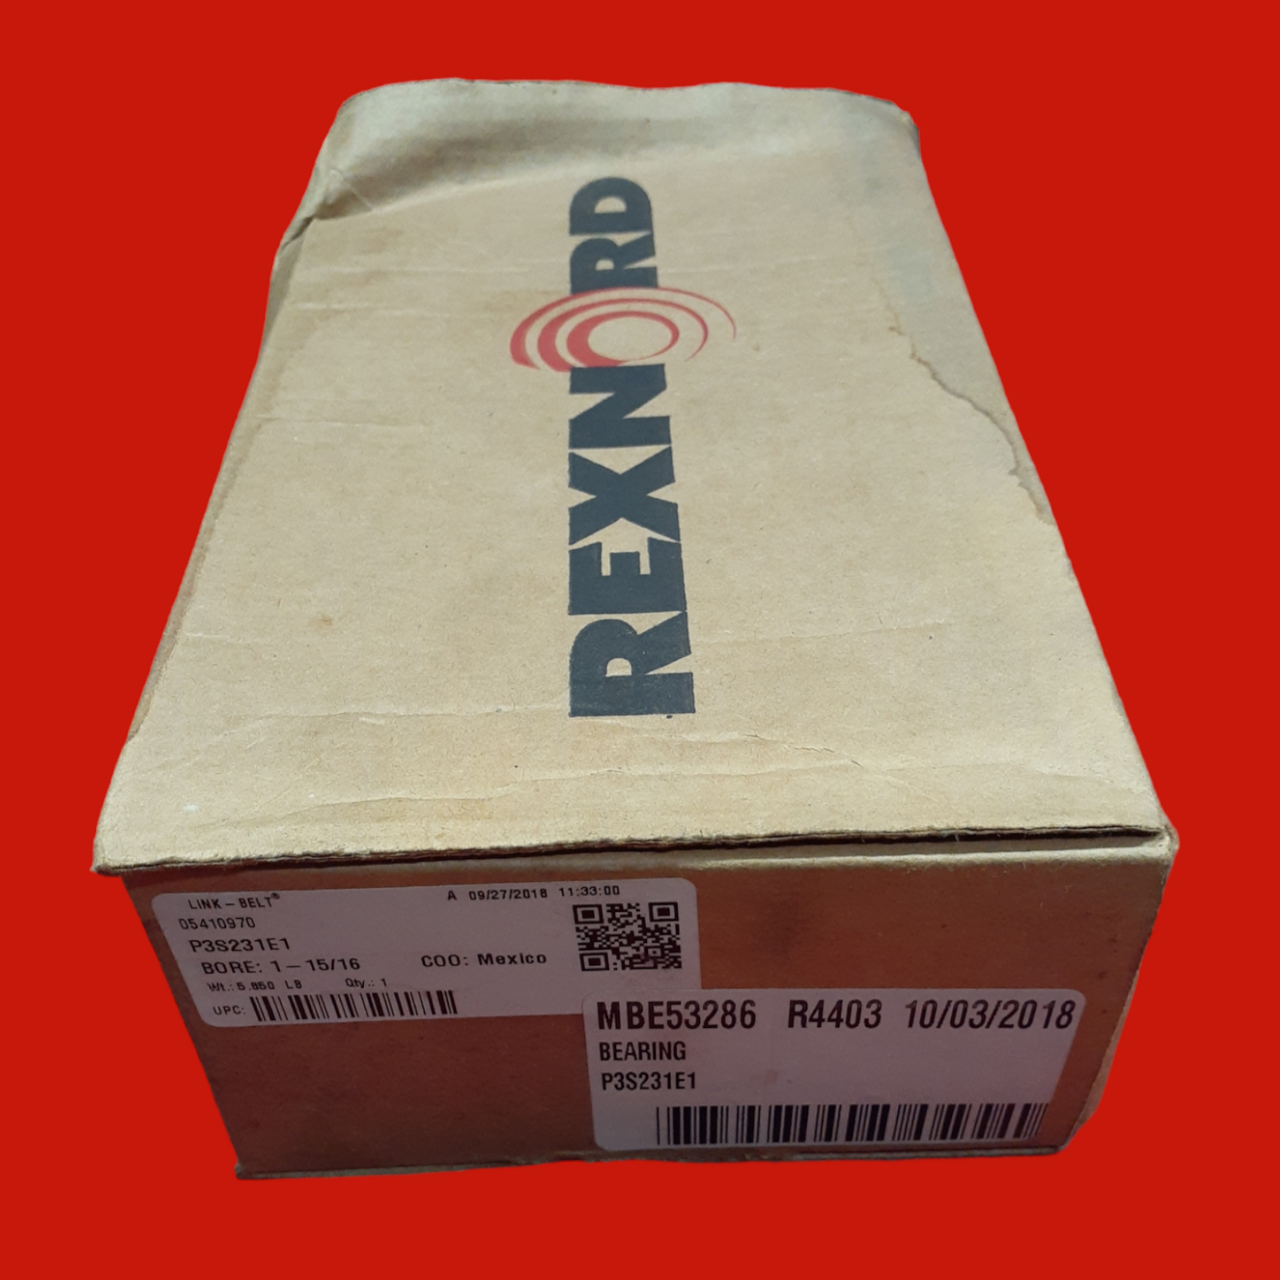 Rexnord Link-Belt P3S231E1, 1-15/16" Pillow Block Ball Bearing